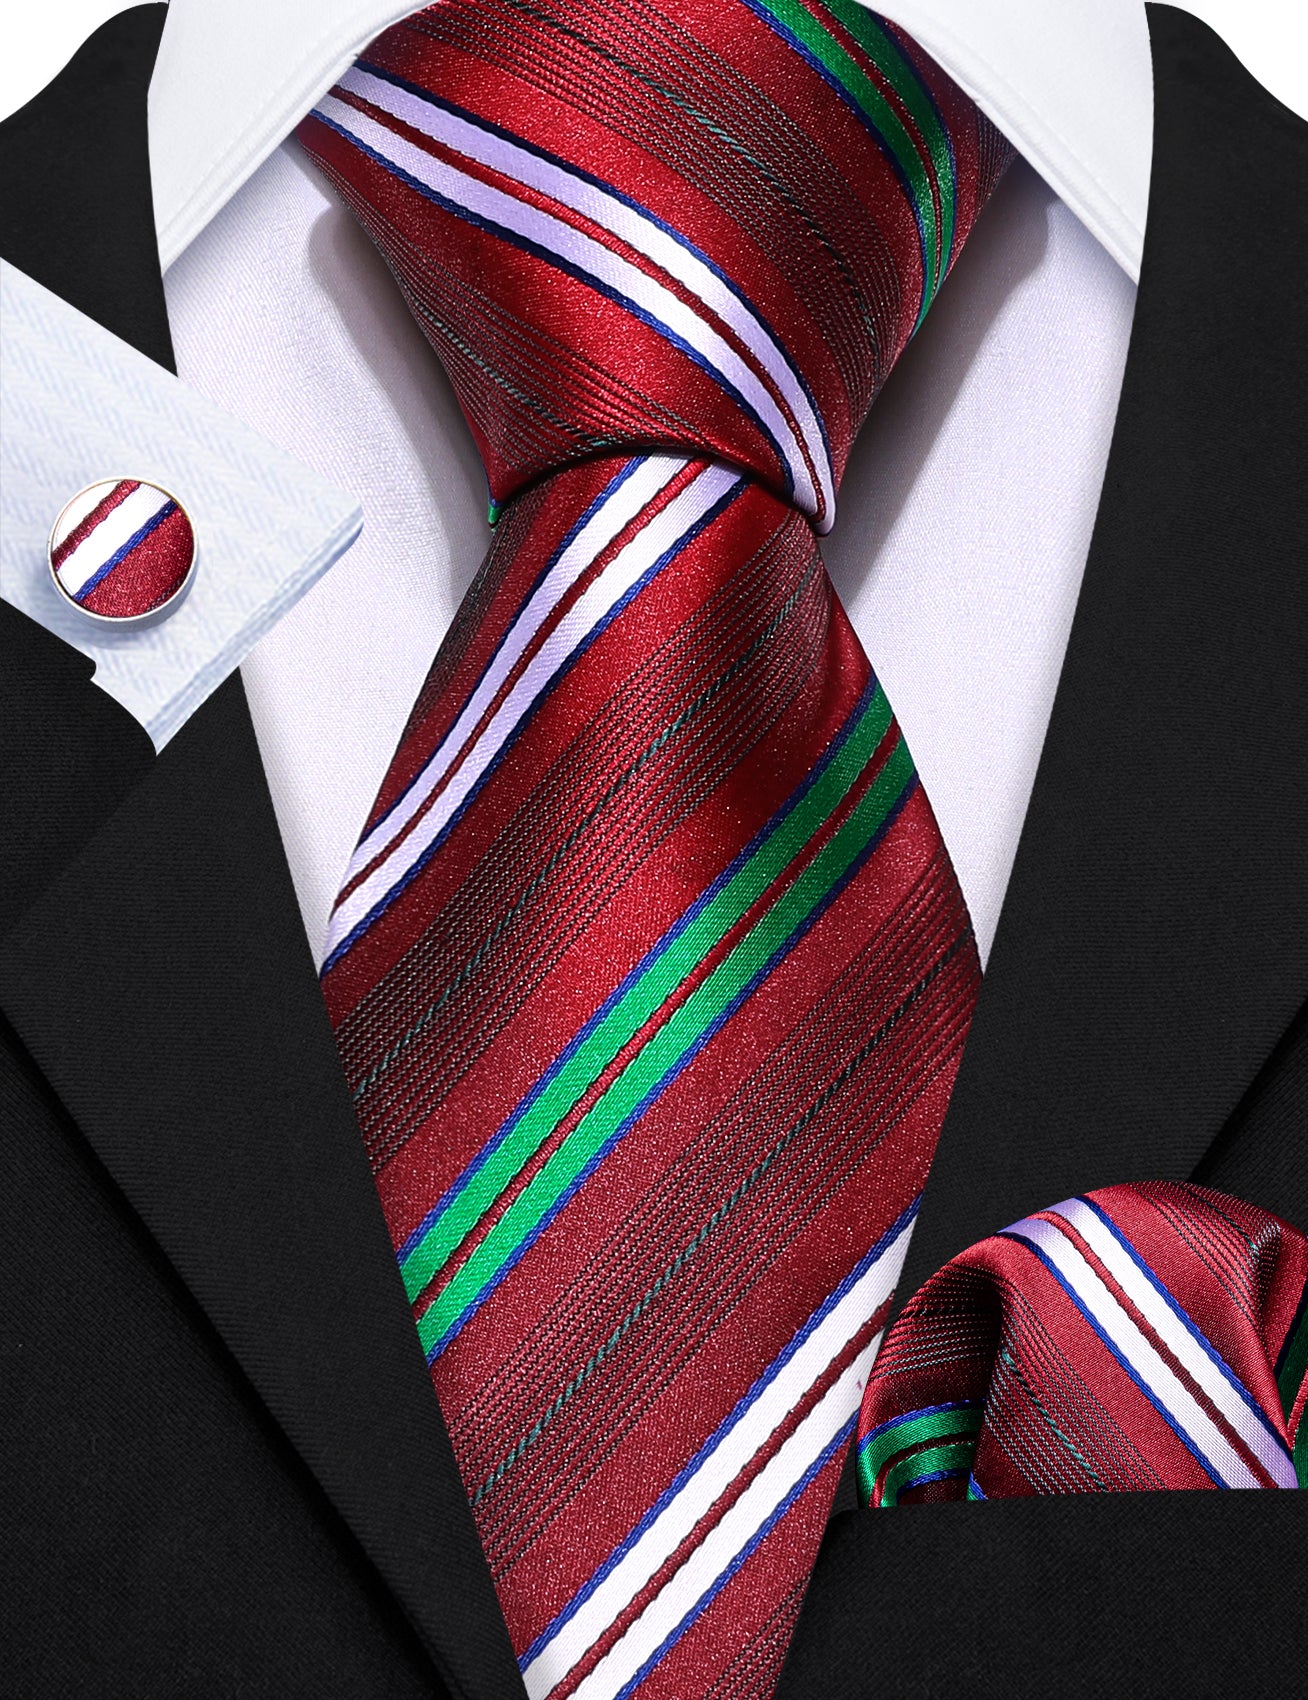 New Blue Red White Striped Silk Tie Hanky Cufflinks Set